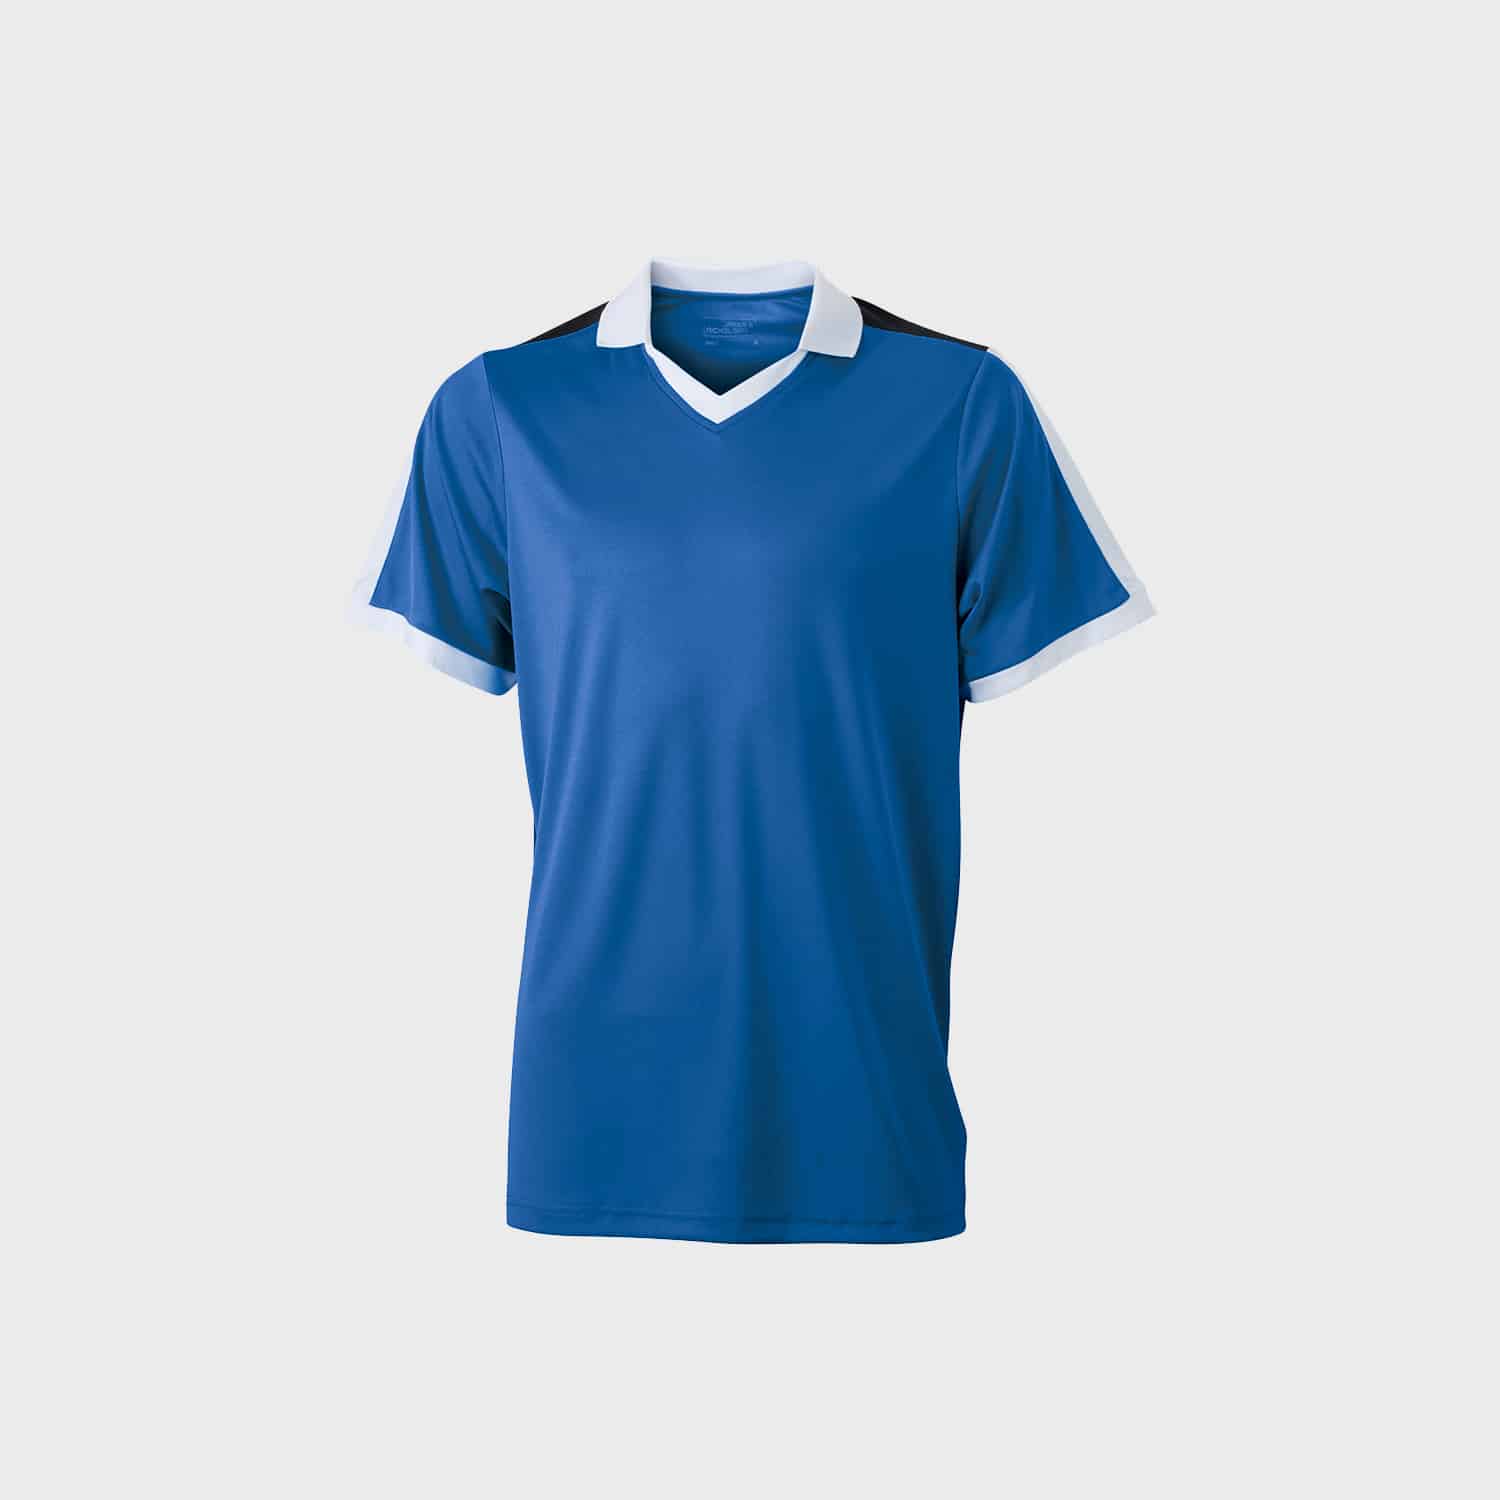 team-shirt-v-neck-t-shirt-unisex-cobalt-shite-black-kaufen-besticken_stickmanufaktur